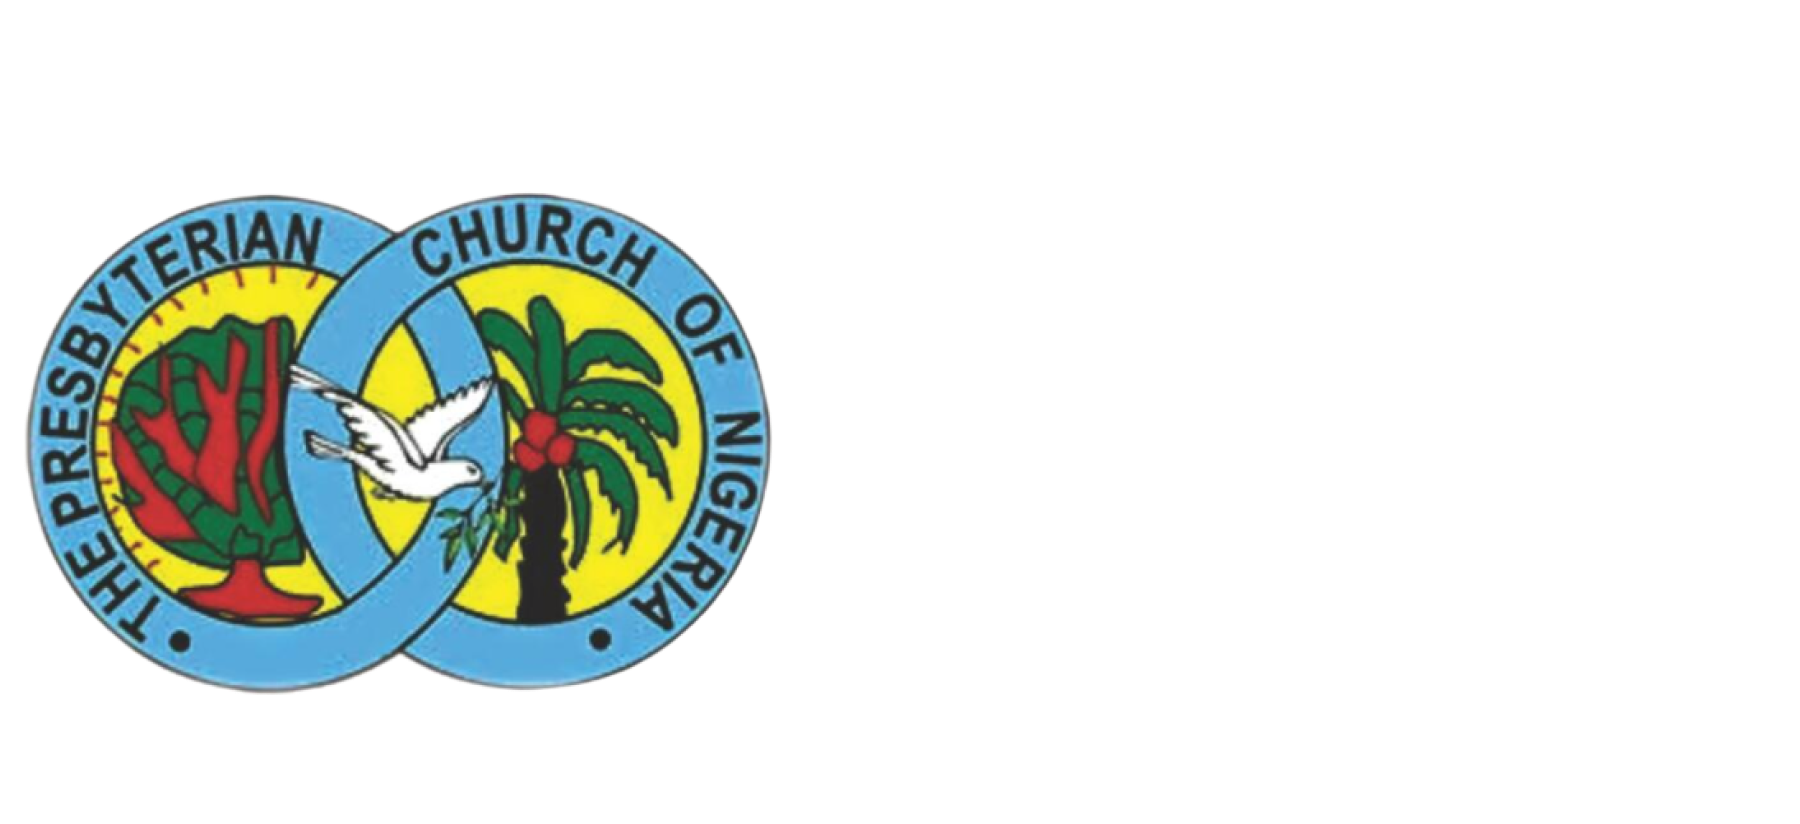 The Presbyterian Church of Nigeria